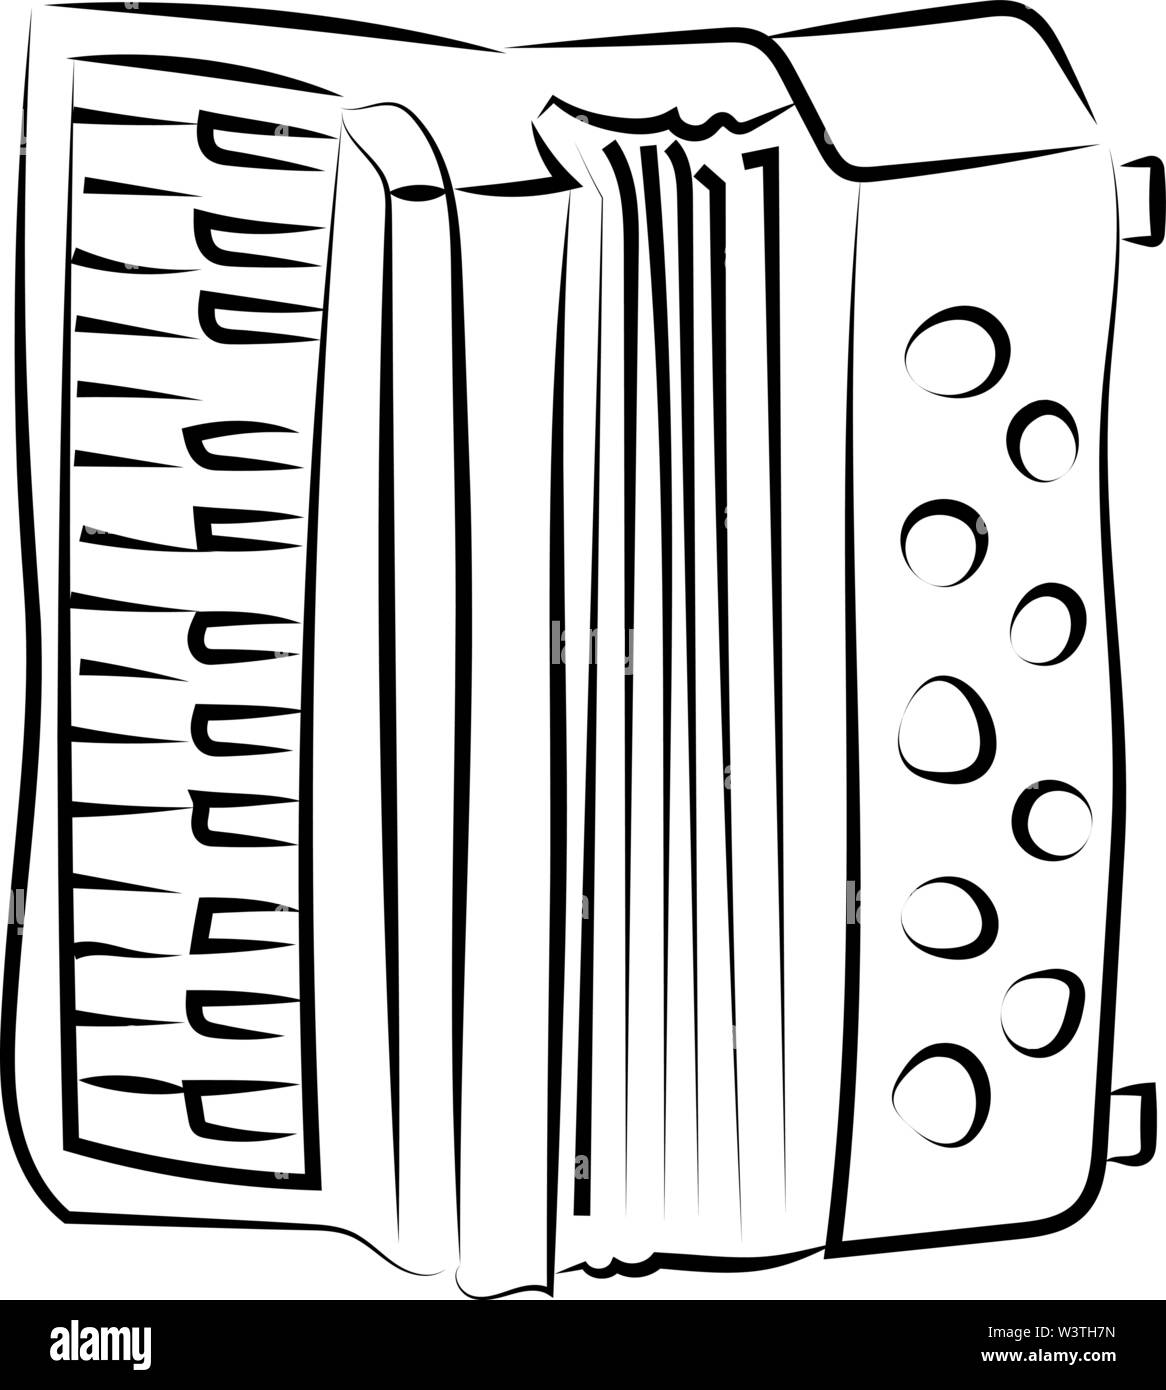 Eine Harmonika Skizze, Illustration, Vektor auf weißem Hintergrund. Stock Vektor